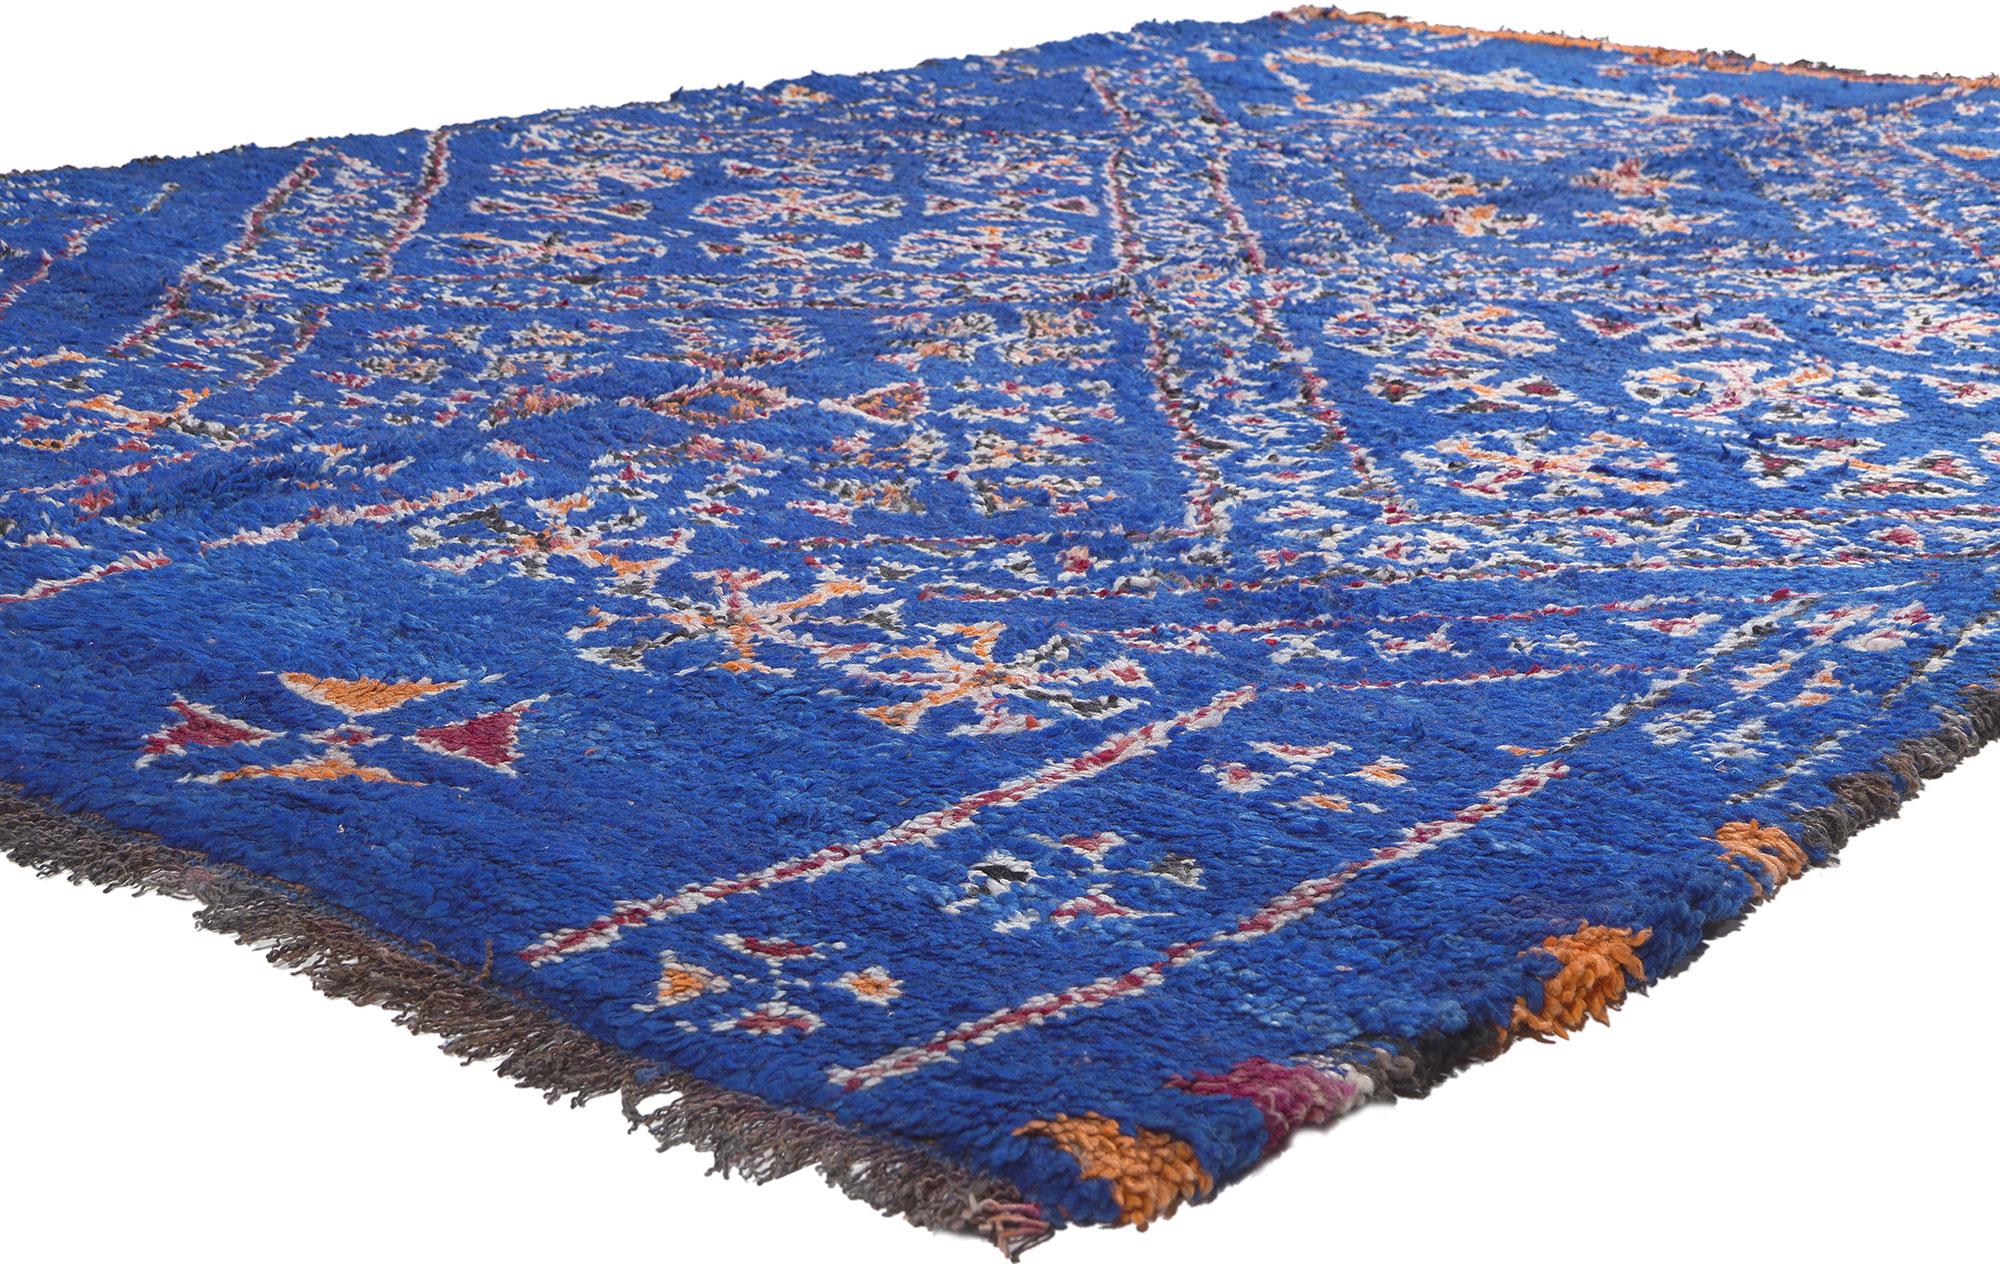 21034 Tapis marocain Beni Mguild bleu vintage, 06'10 x 10'06. Tissés avec l'expertise enchanteresse des femmes berbères de la tribu des Ait M'Guild dans les montagnes mystiques de l'Atlas au Maroc, les tapis Beni Mguild sont révérés pour leur